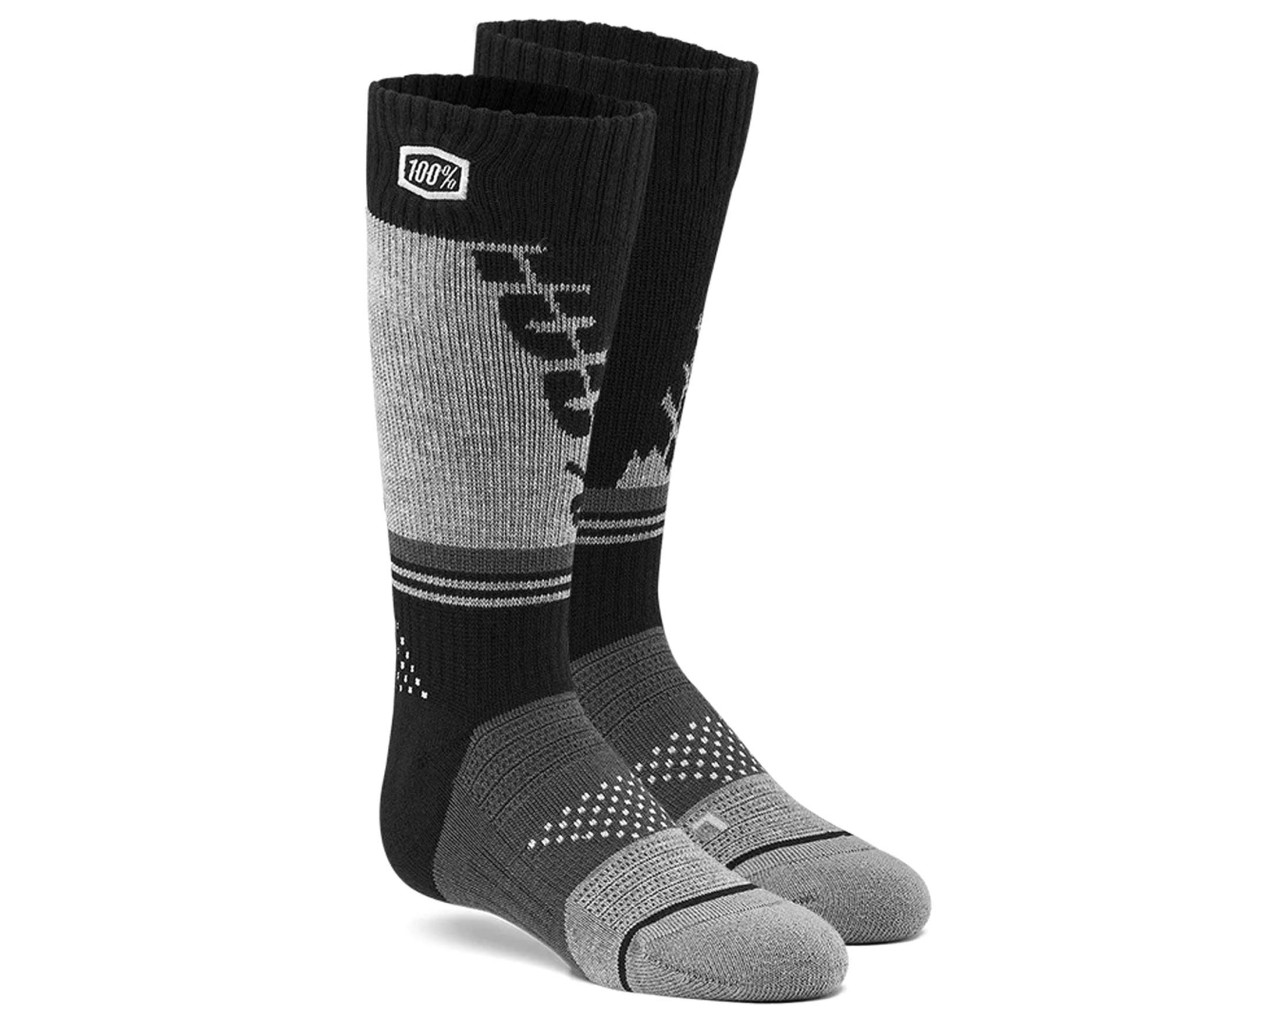 100% Torque Comfort Moto Socks | black-grey